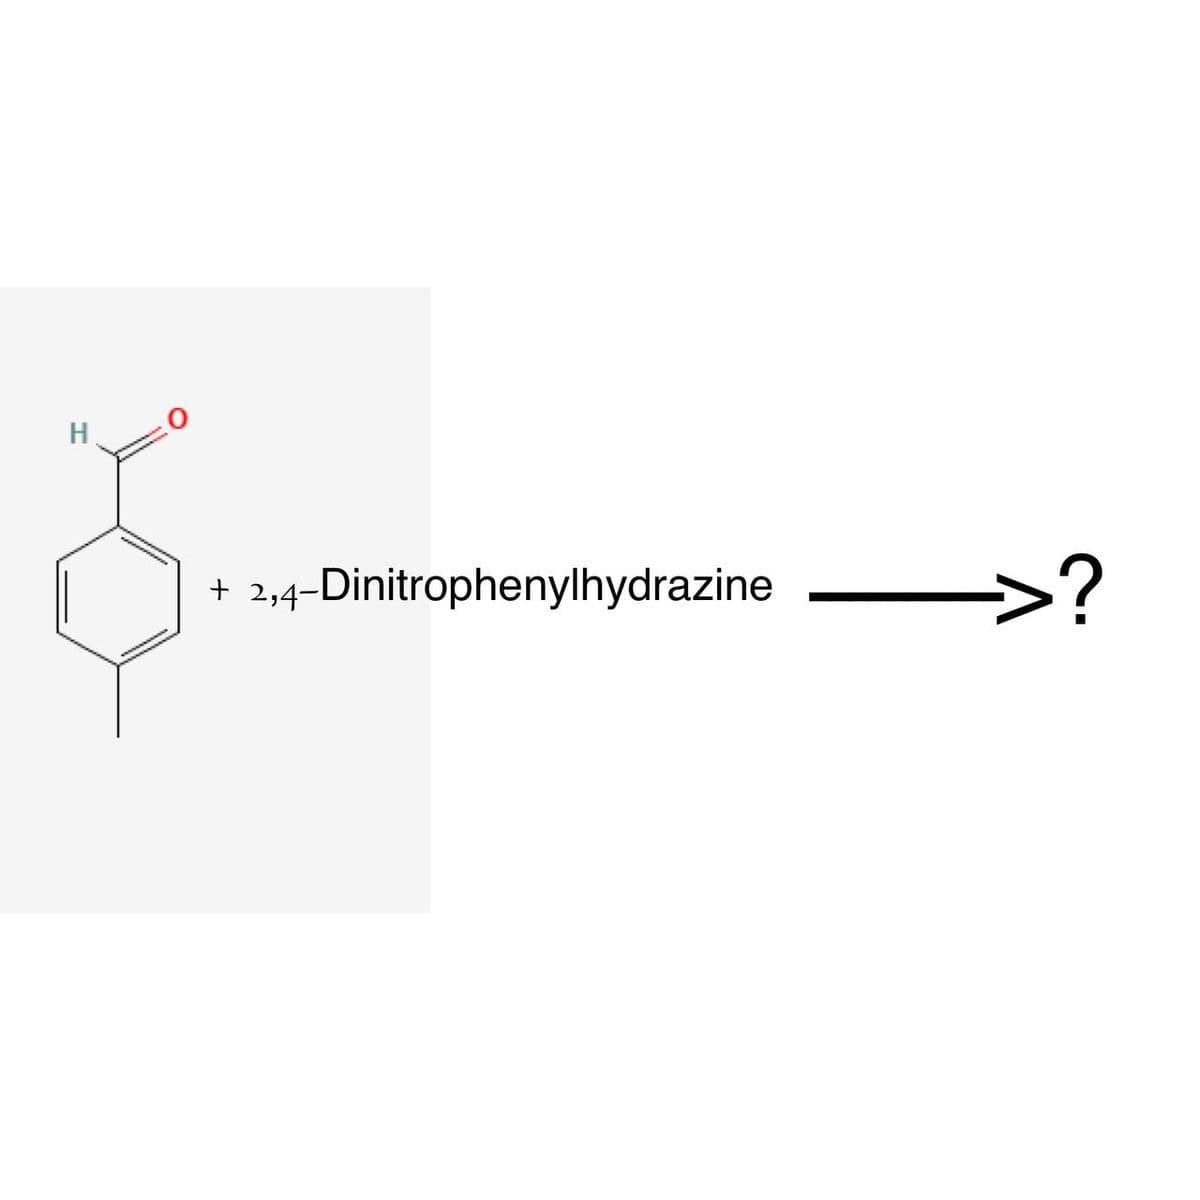 H
2,4-Dinitrophenylhydrazine
>?